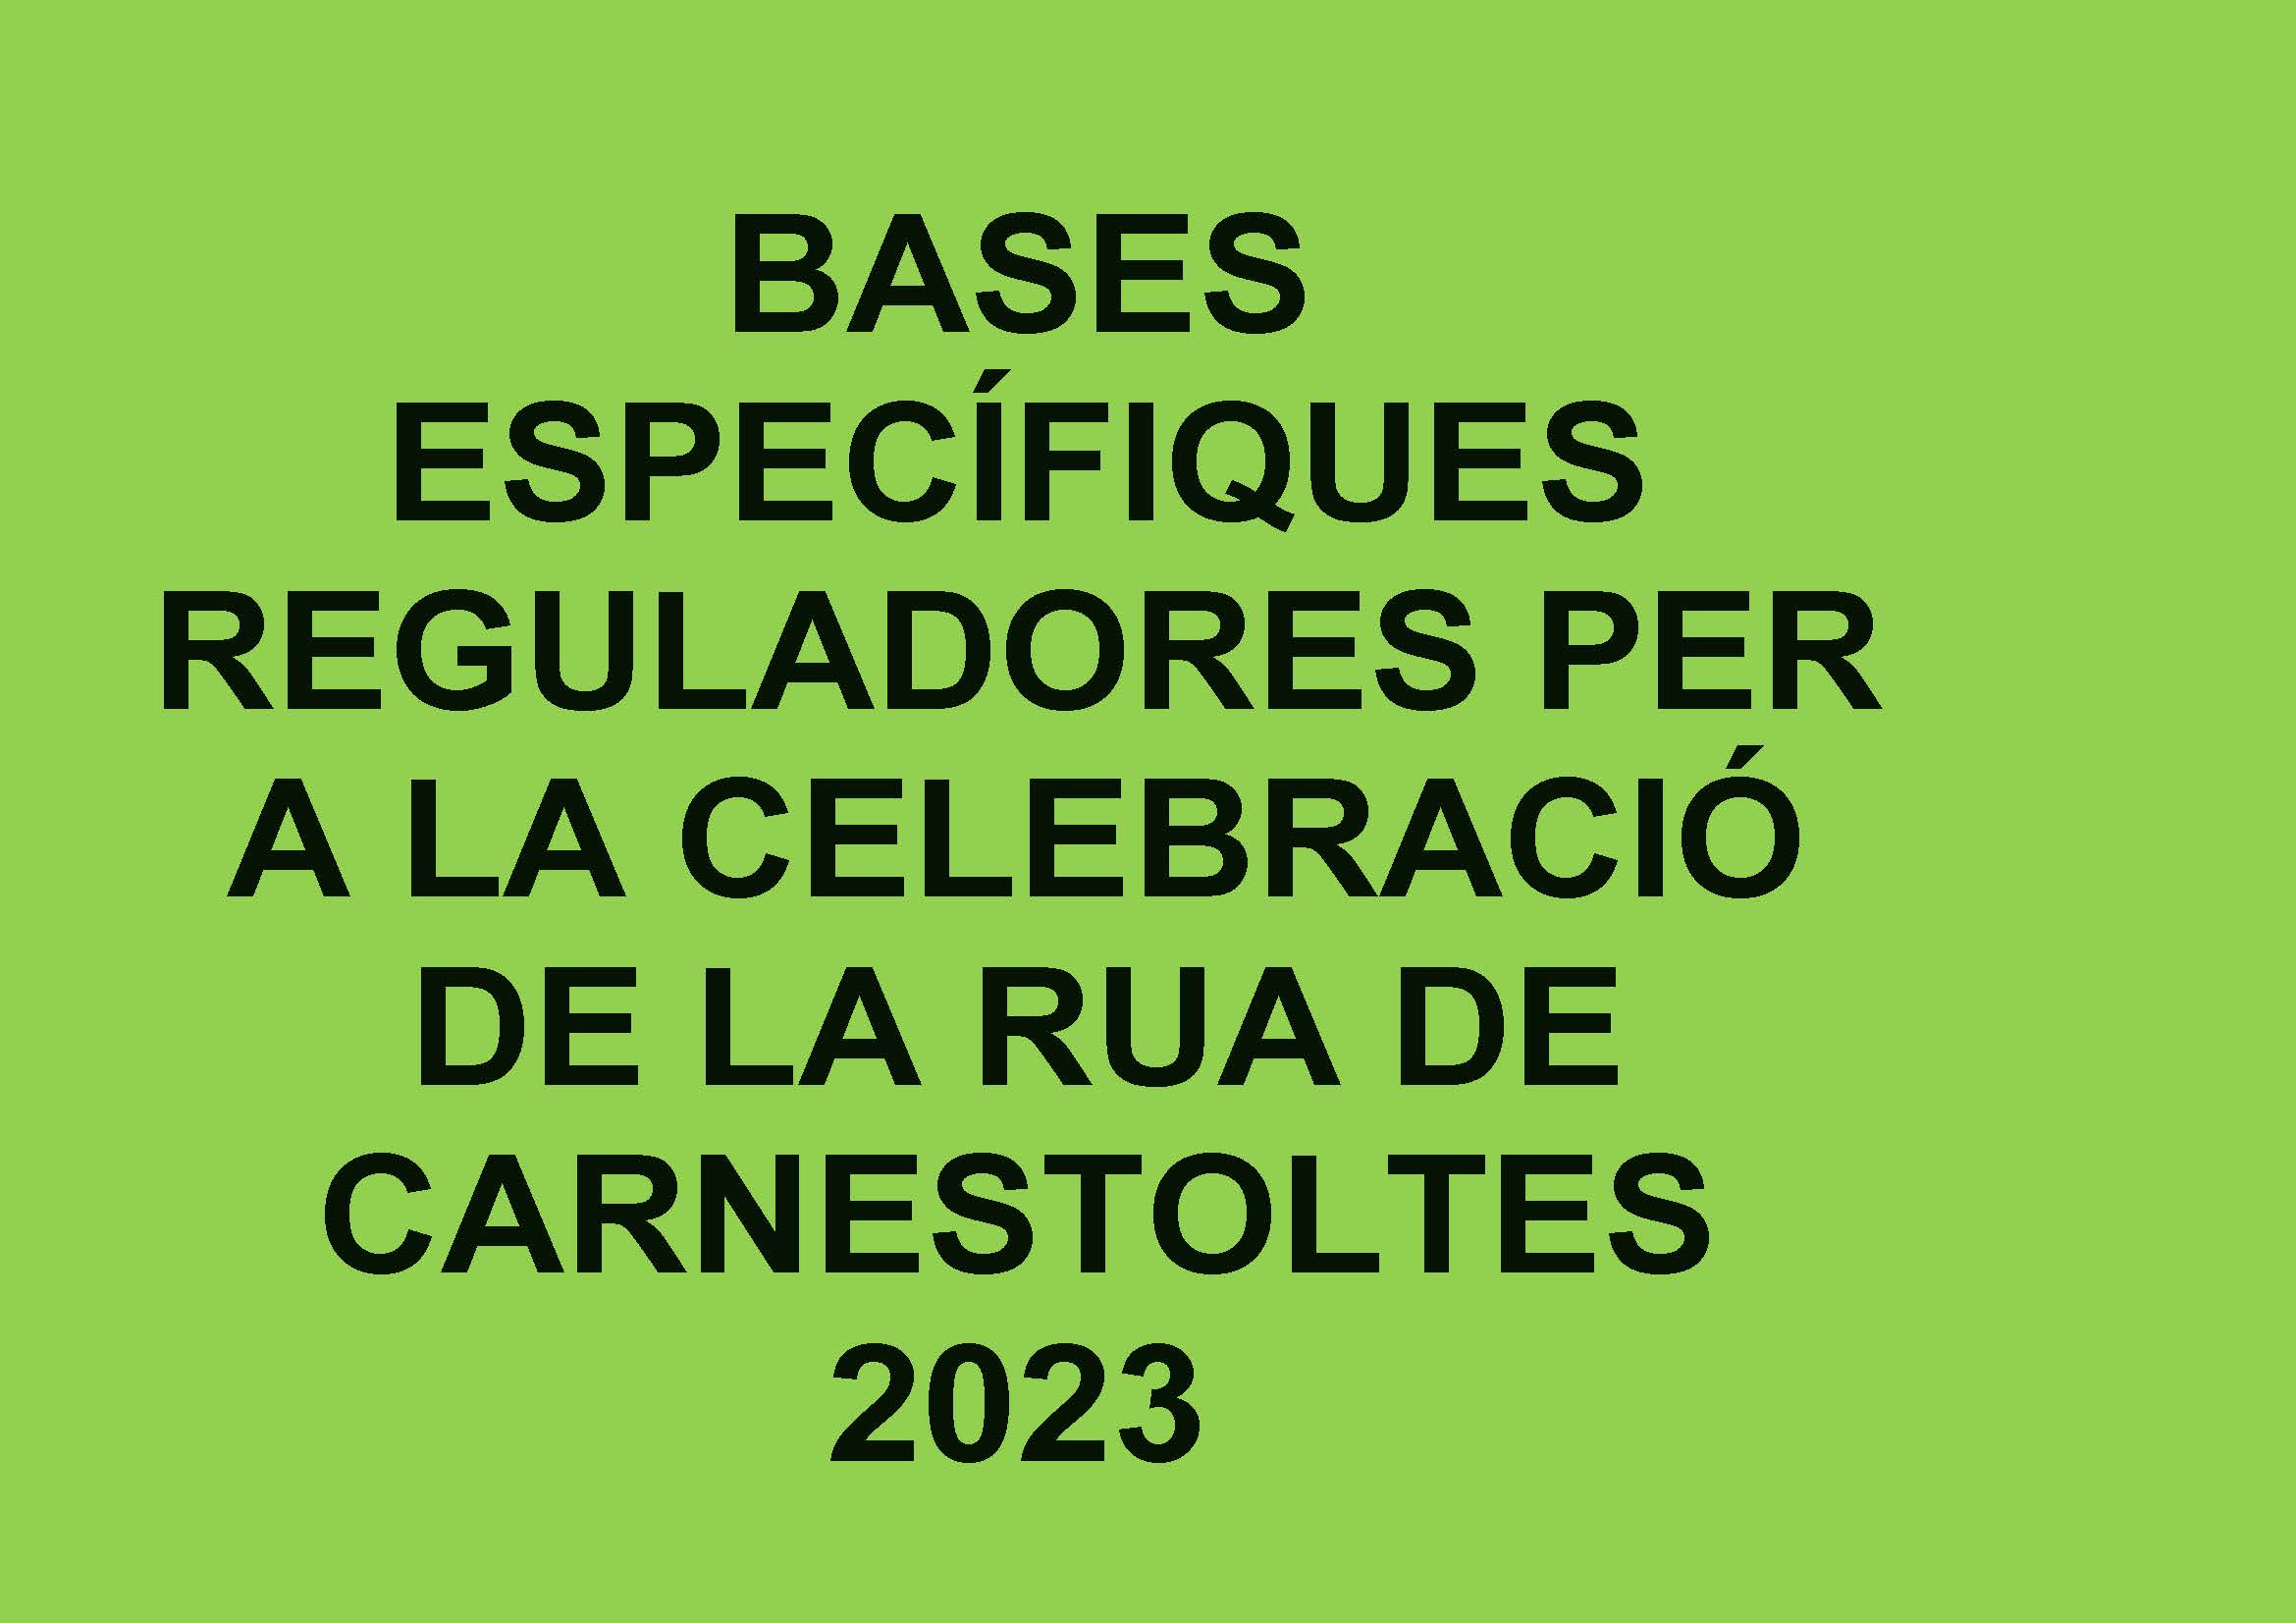 Bases reguladores de la Festa del Carnestoltes 2023